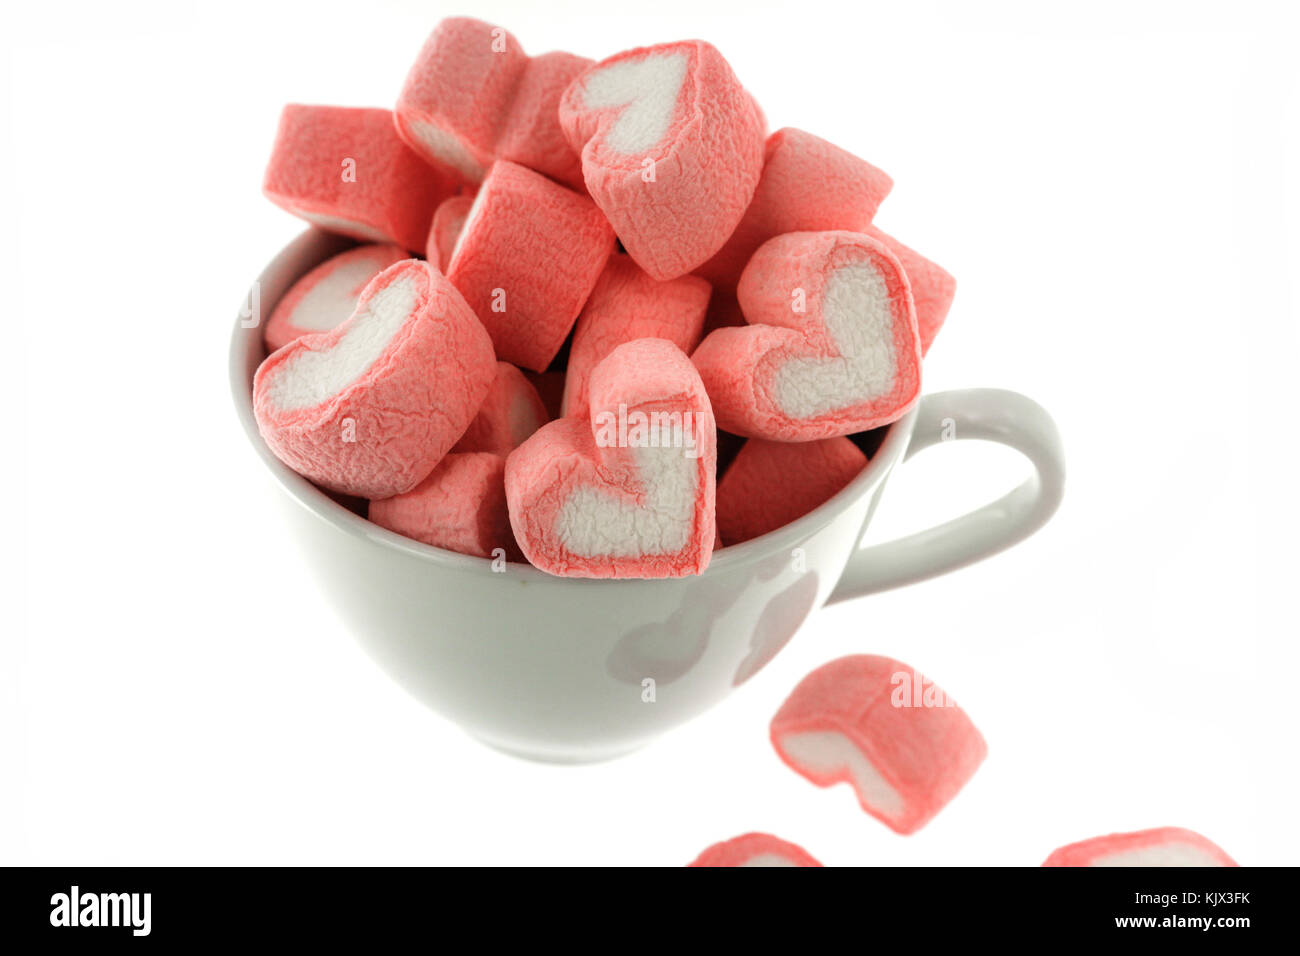 https://c8.alamy.com/comp/KJX3FK/pink-heart-shaped-marshmallows-in-the-white-cup-isolated-on-white-KJX3FK.jpg